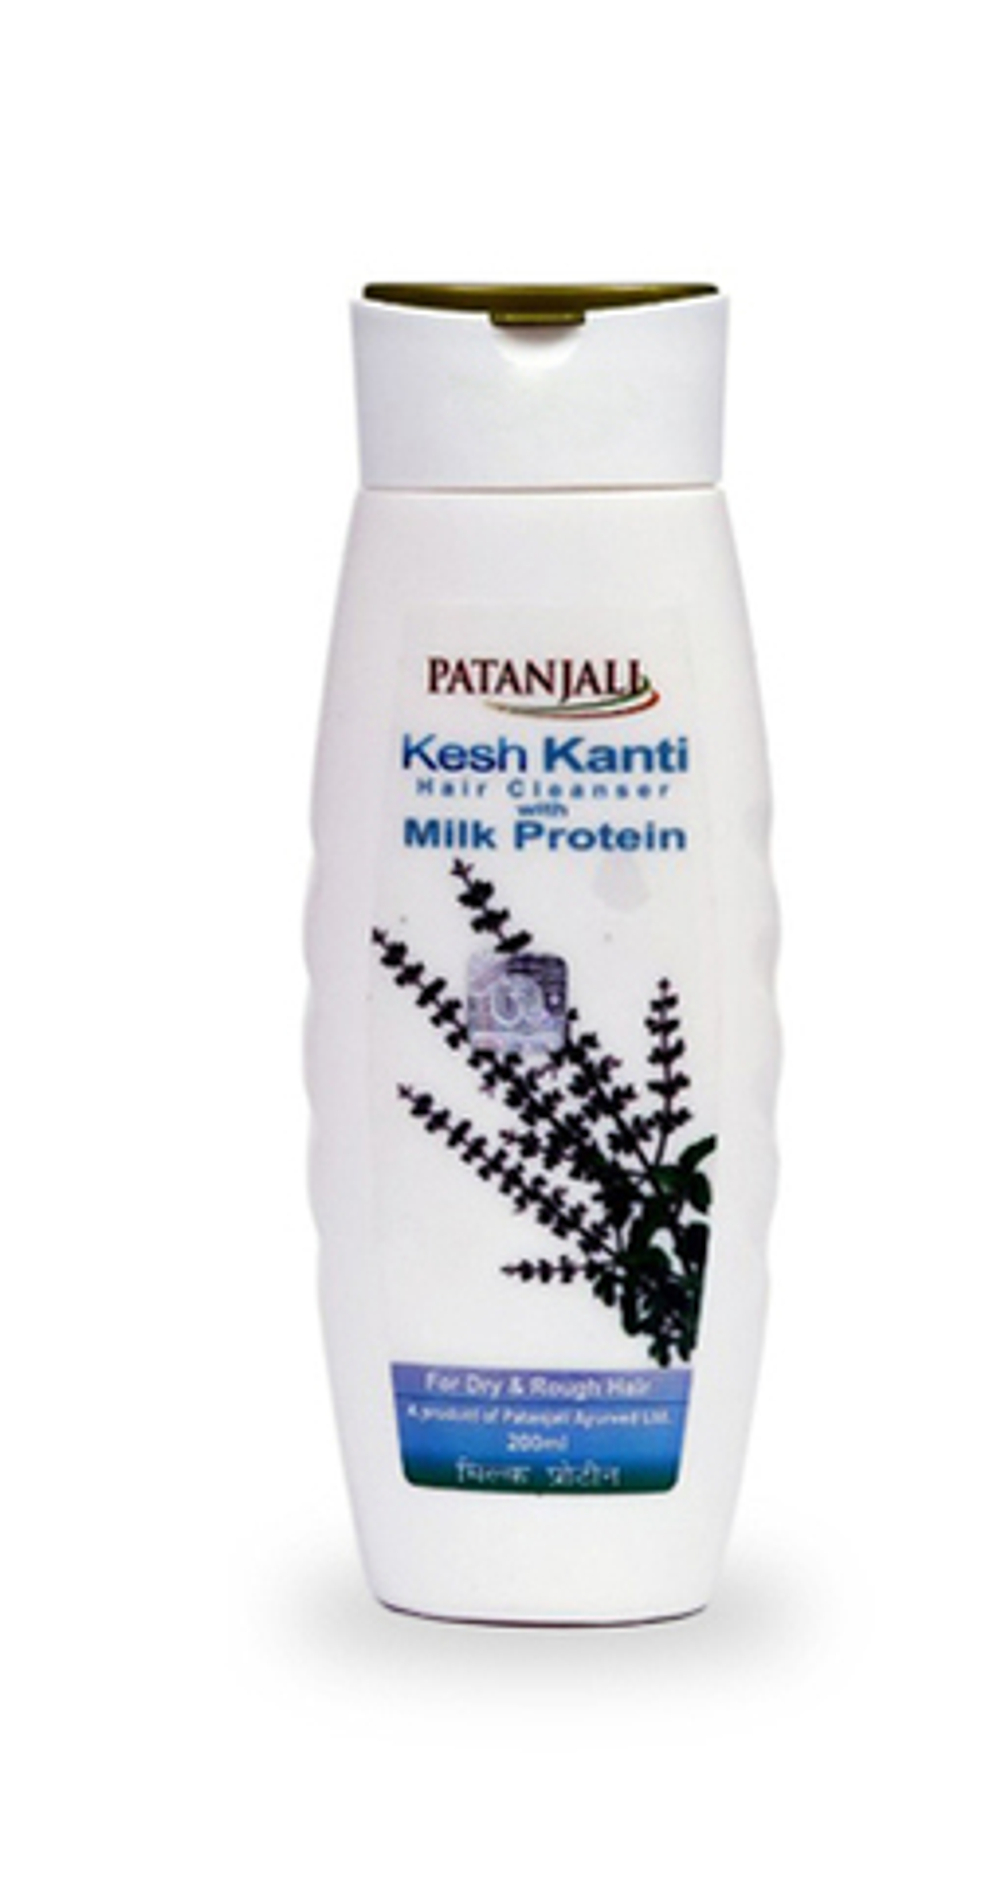 Шампунь Patanjali Kesh Kanti Milk Protein, восстановление поврежденных и окрашенных волос, 8 мл.